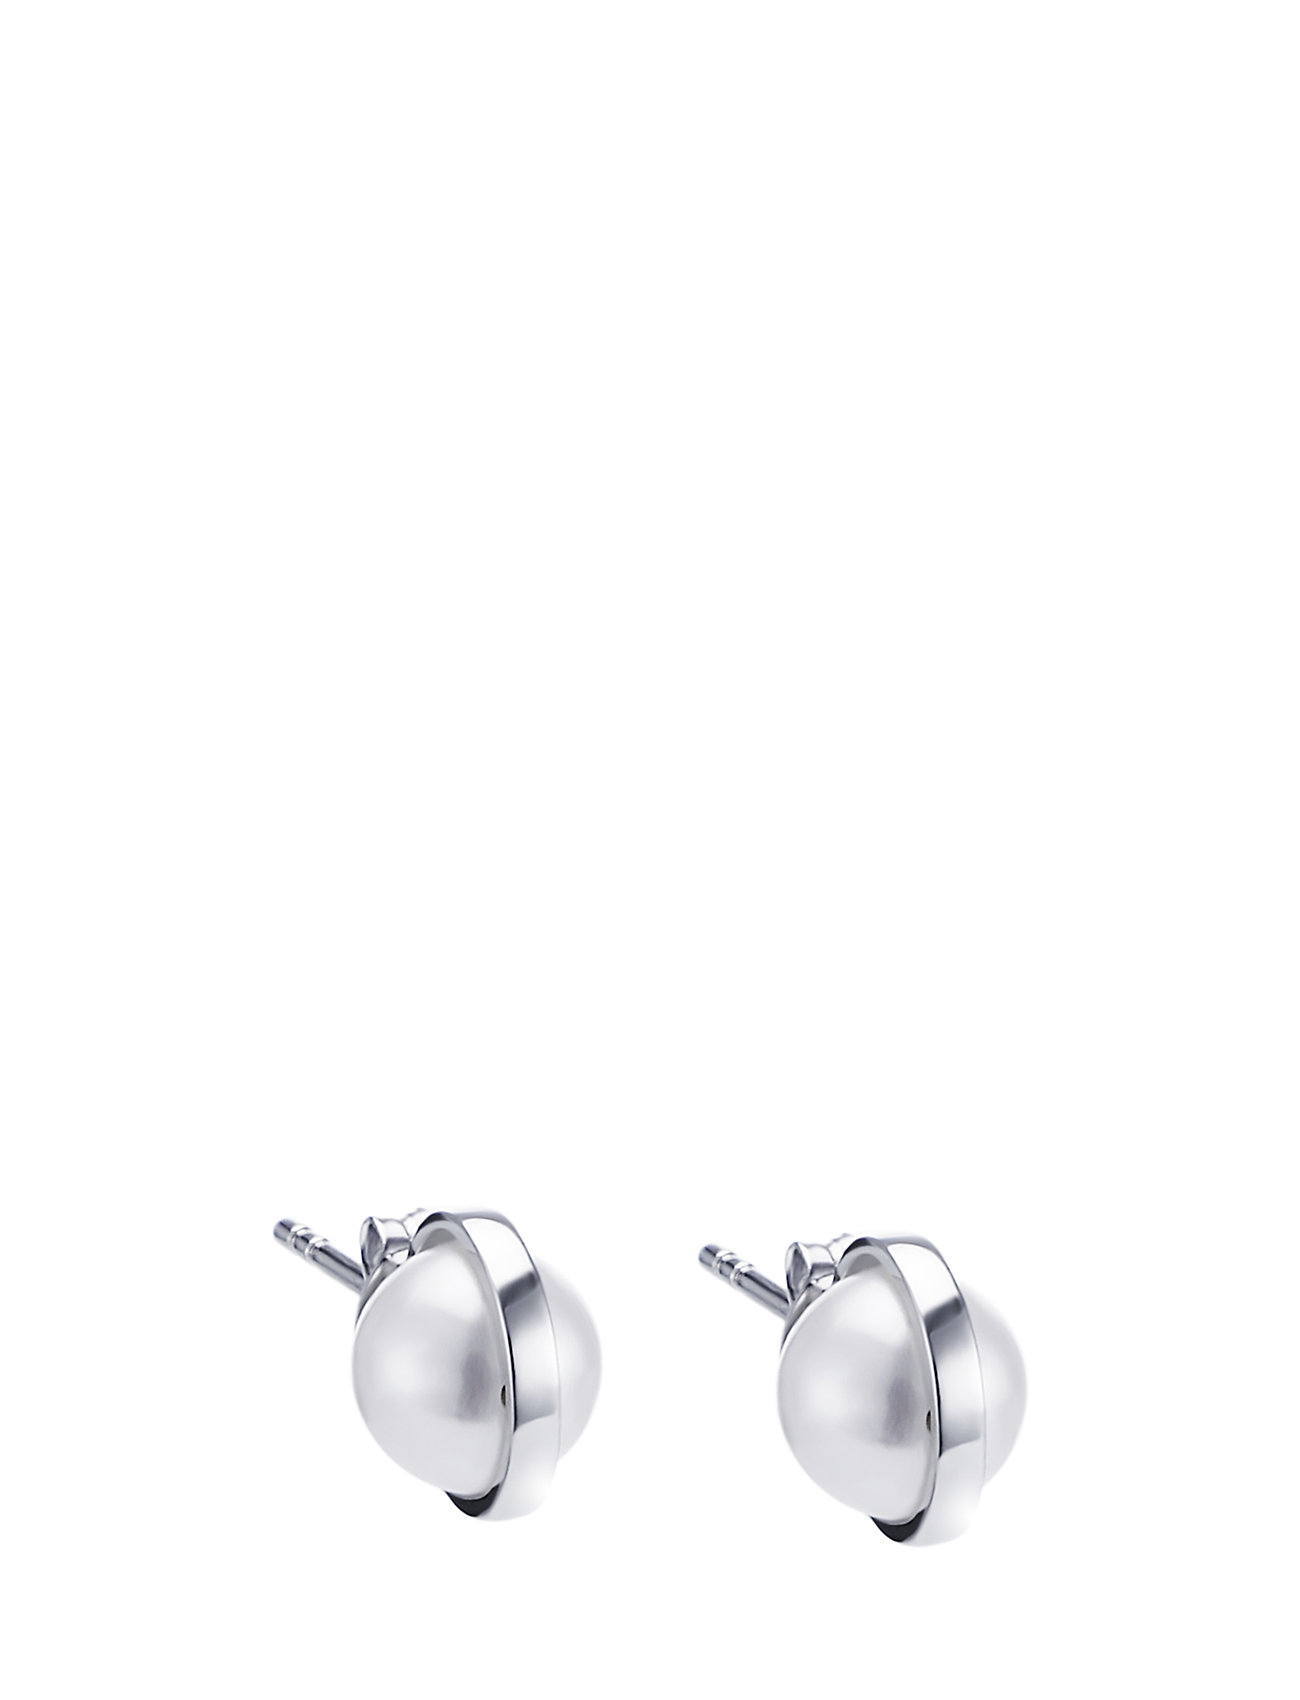 Day Pearl Ear Accessories Jewellery Earrings Studs Hopea Efva Attling